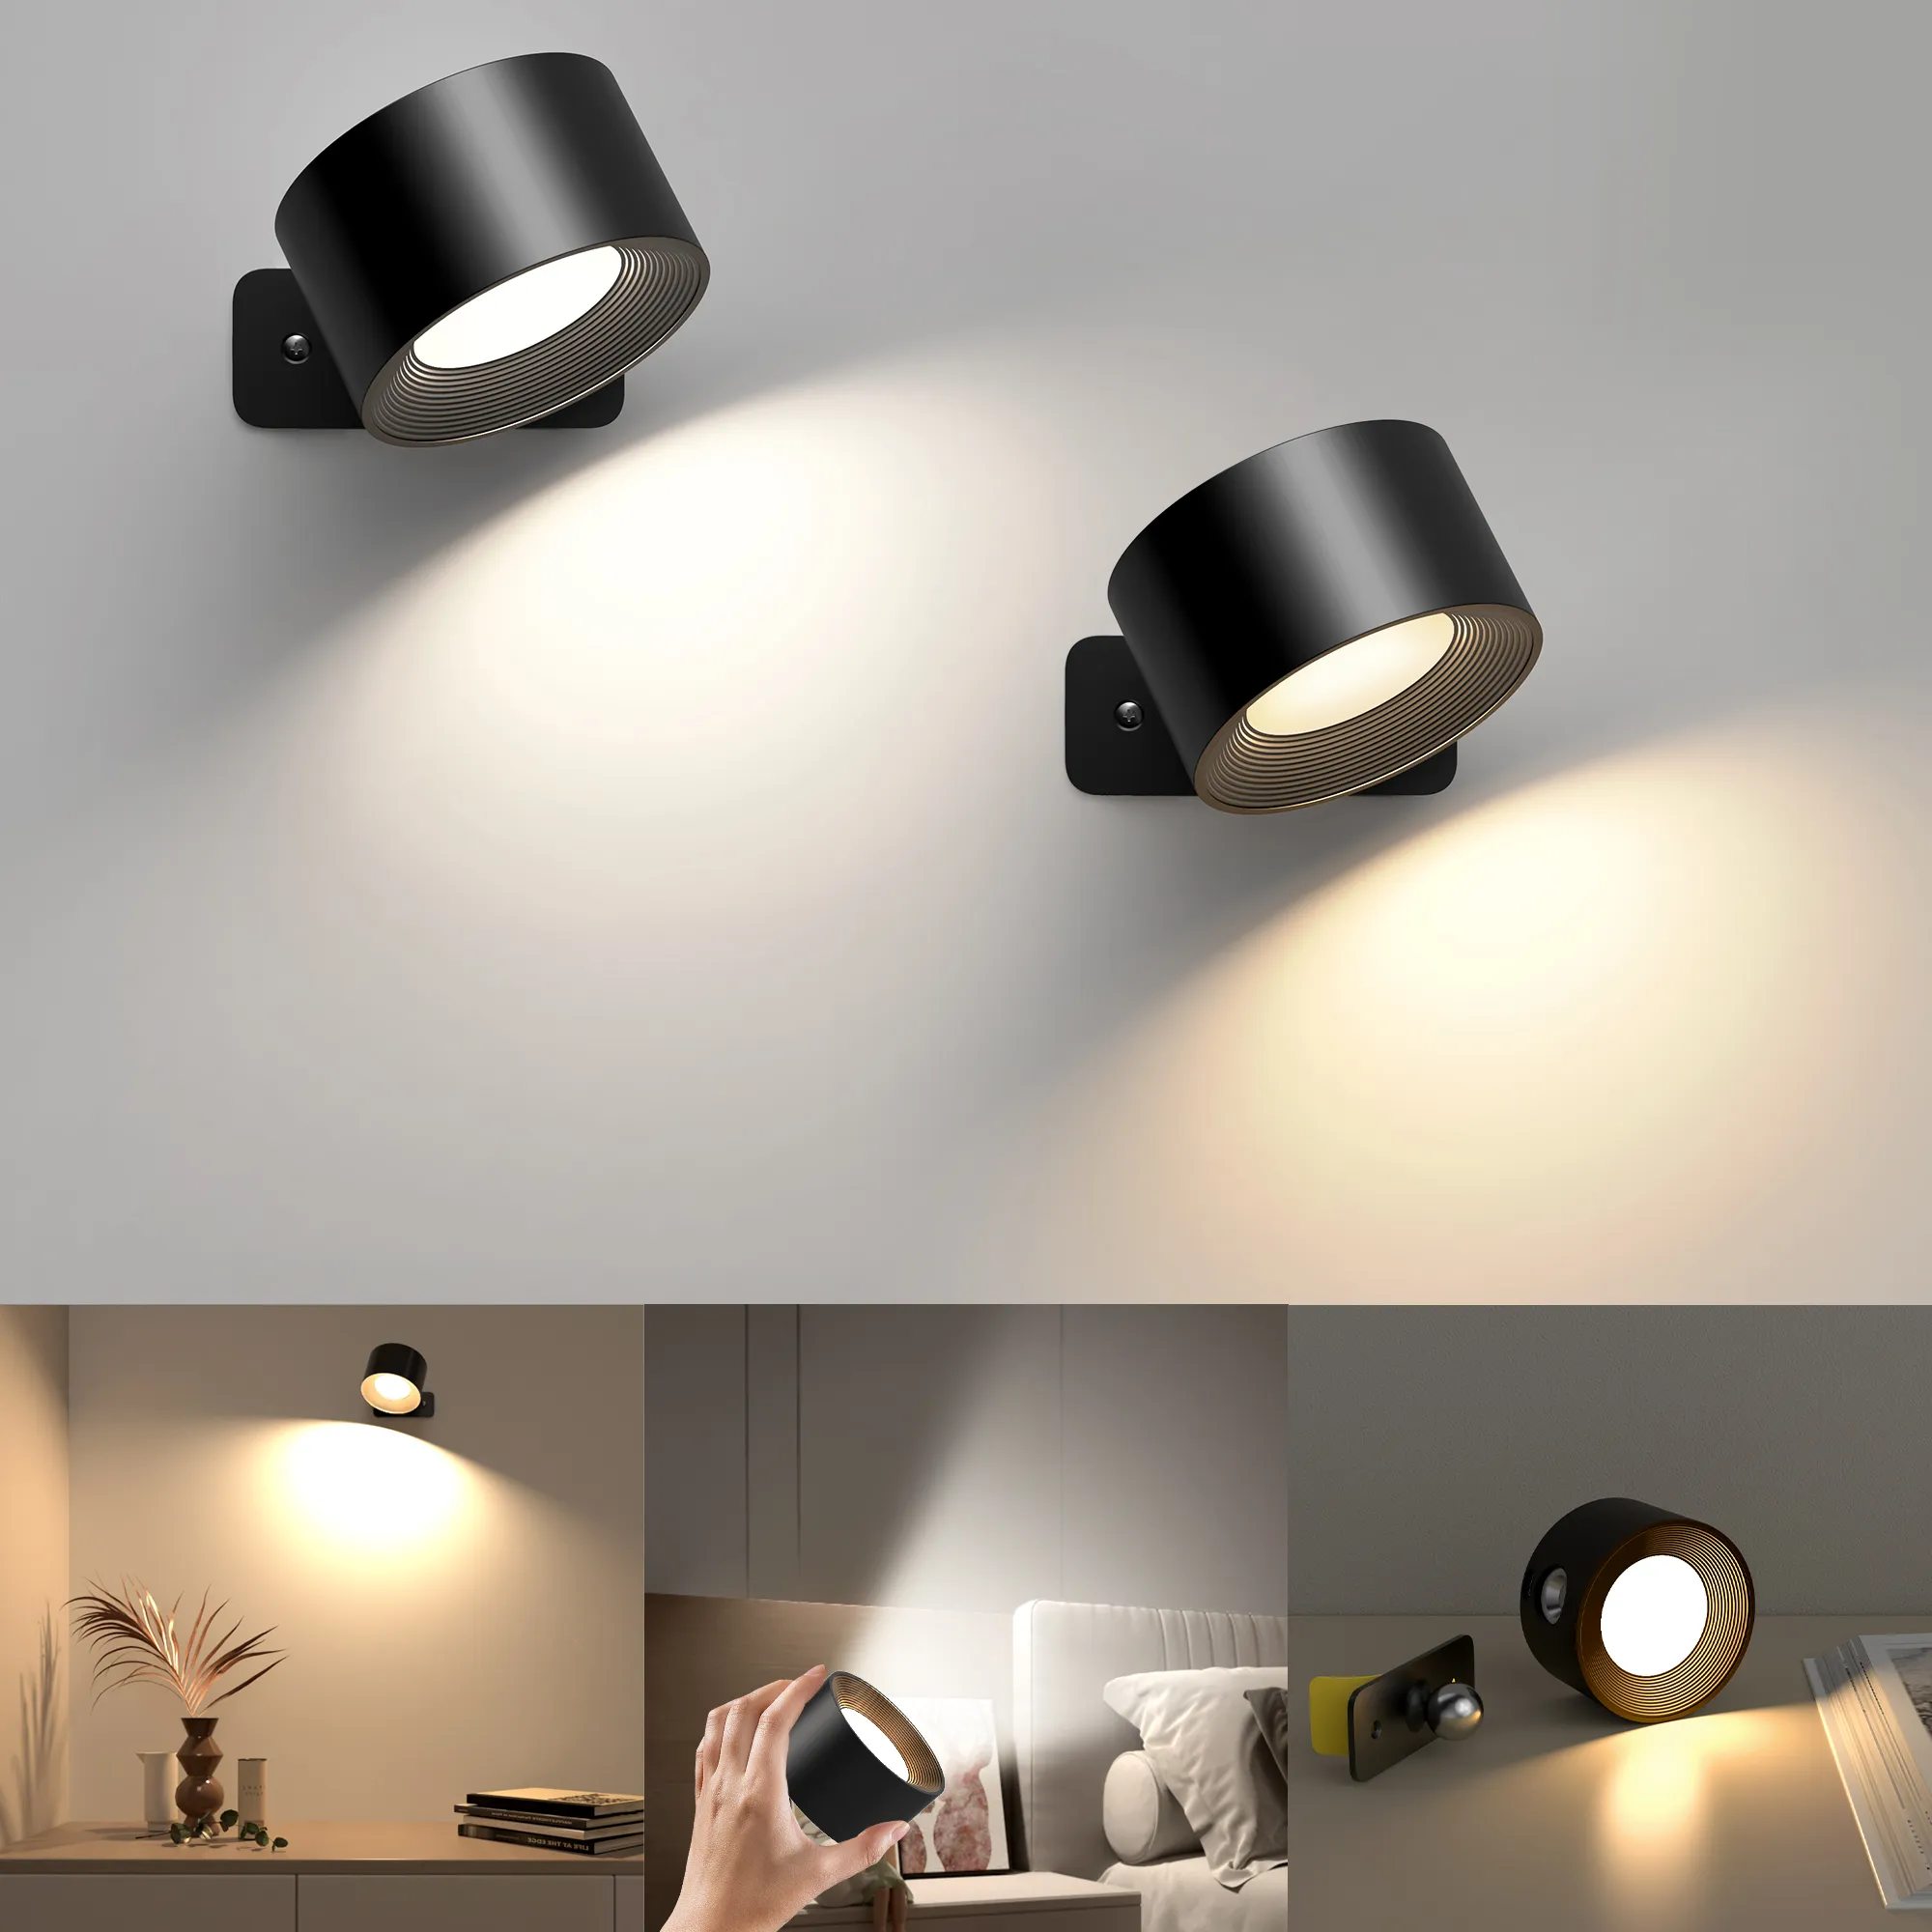 LED -Wandleuchte wiederaufladbare Lesen Leuchten 360 ° Rotation Berührung Fernbedienungsschrank Spotlight Nachtlampe